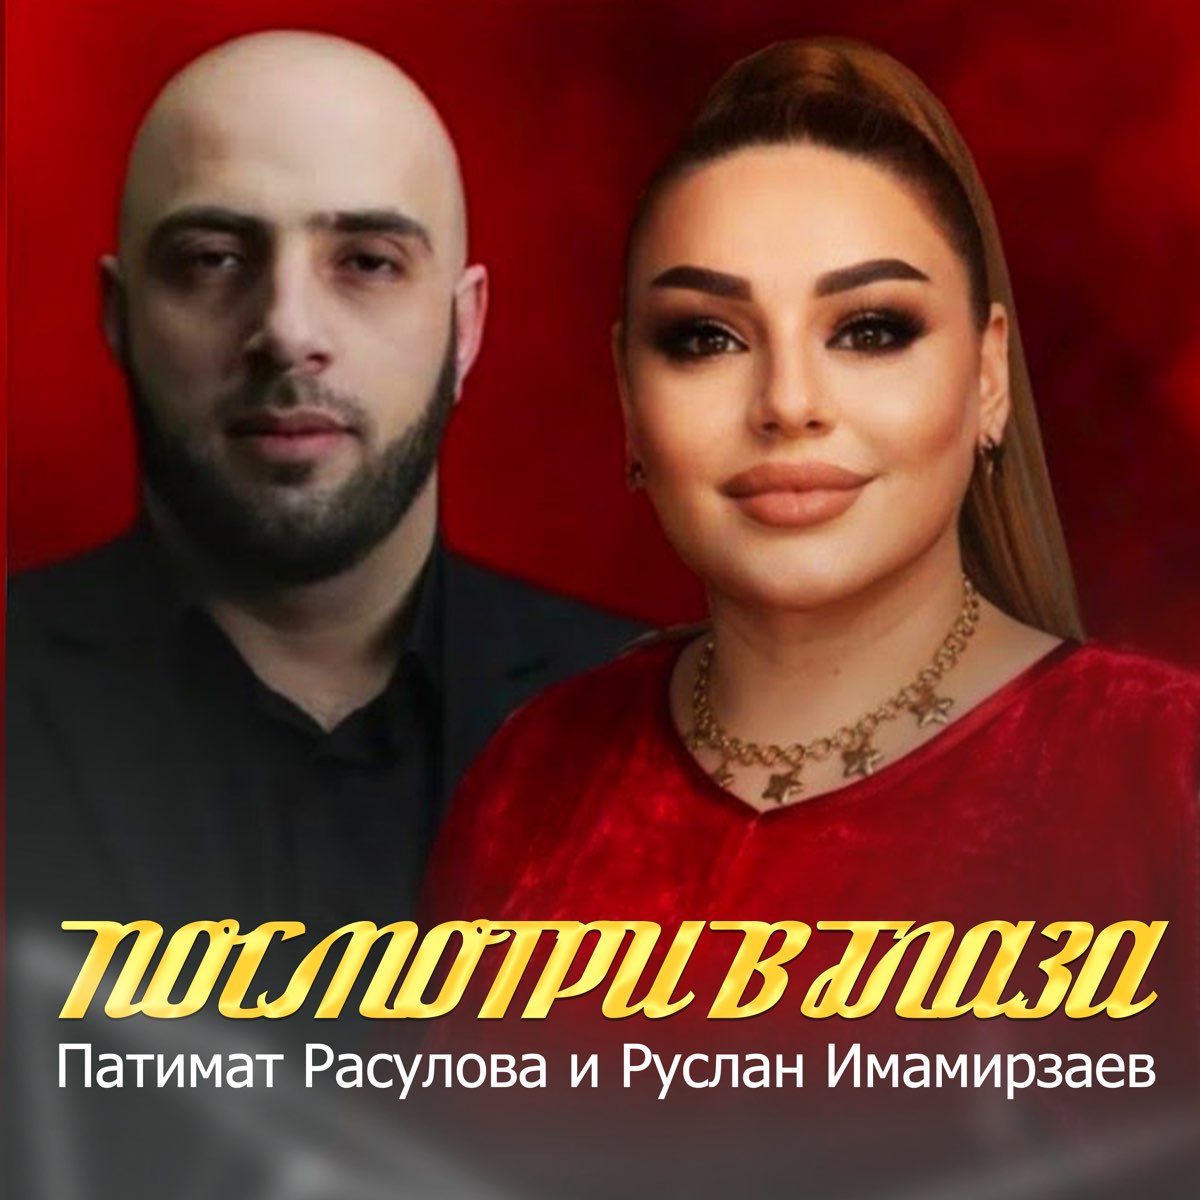 Кавказские песни новинки 2023 слушать на русском